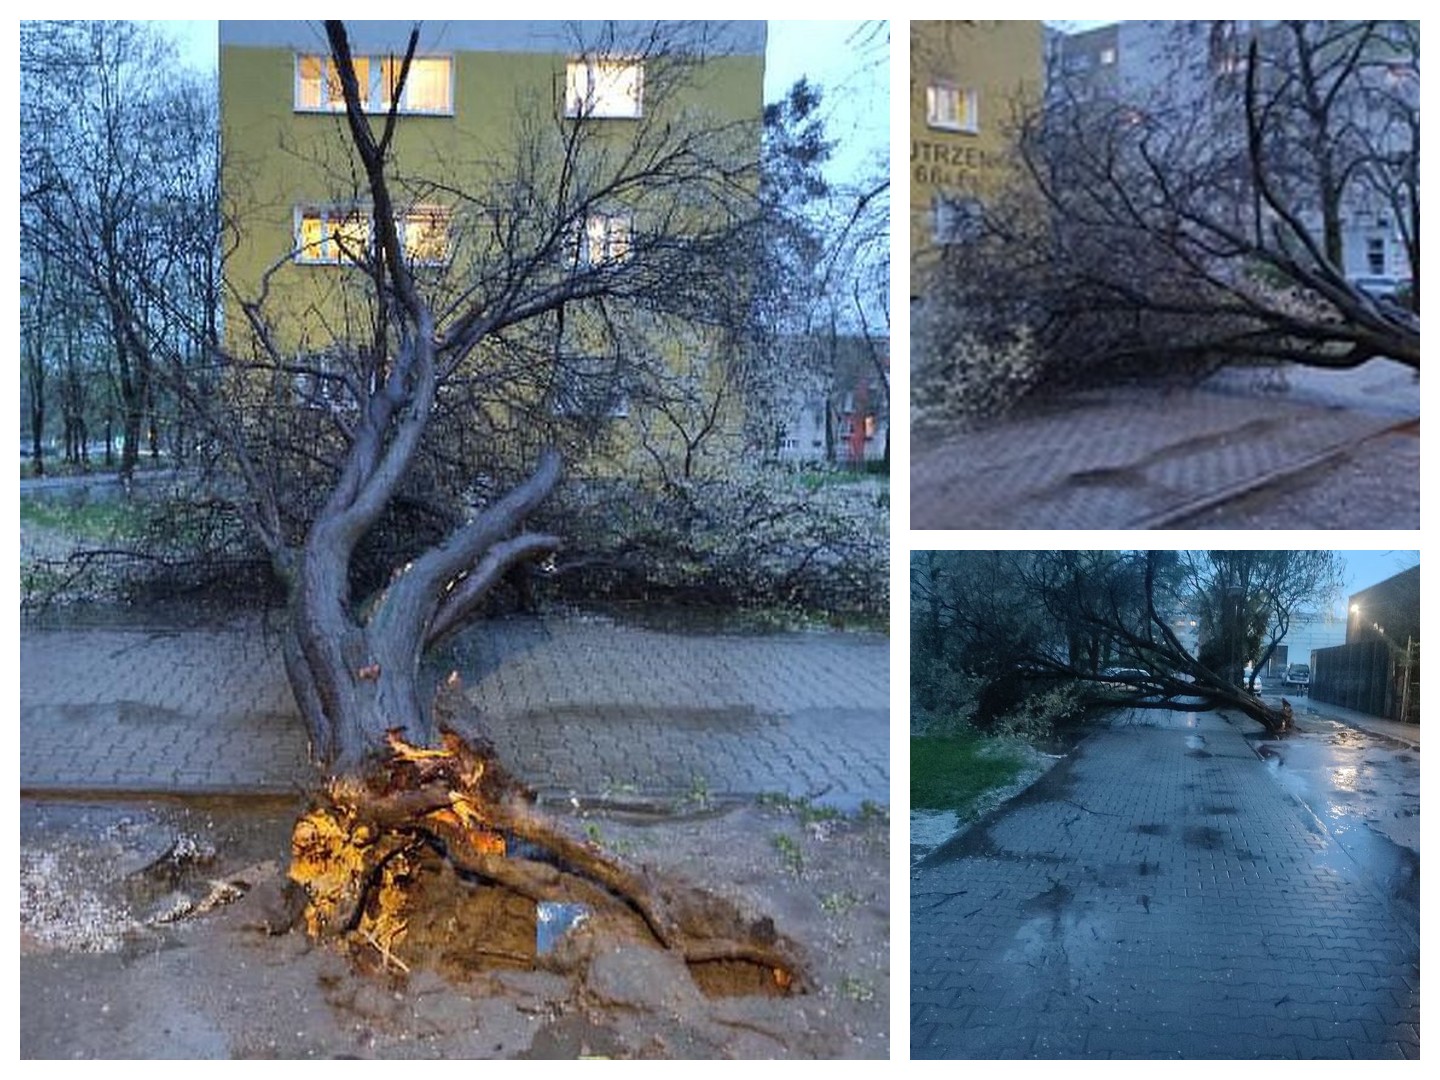 Burze dotarły do Poznania – połamane drzewa, ulewny deszcz i problemy z sygnalizacją świetlną